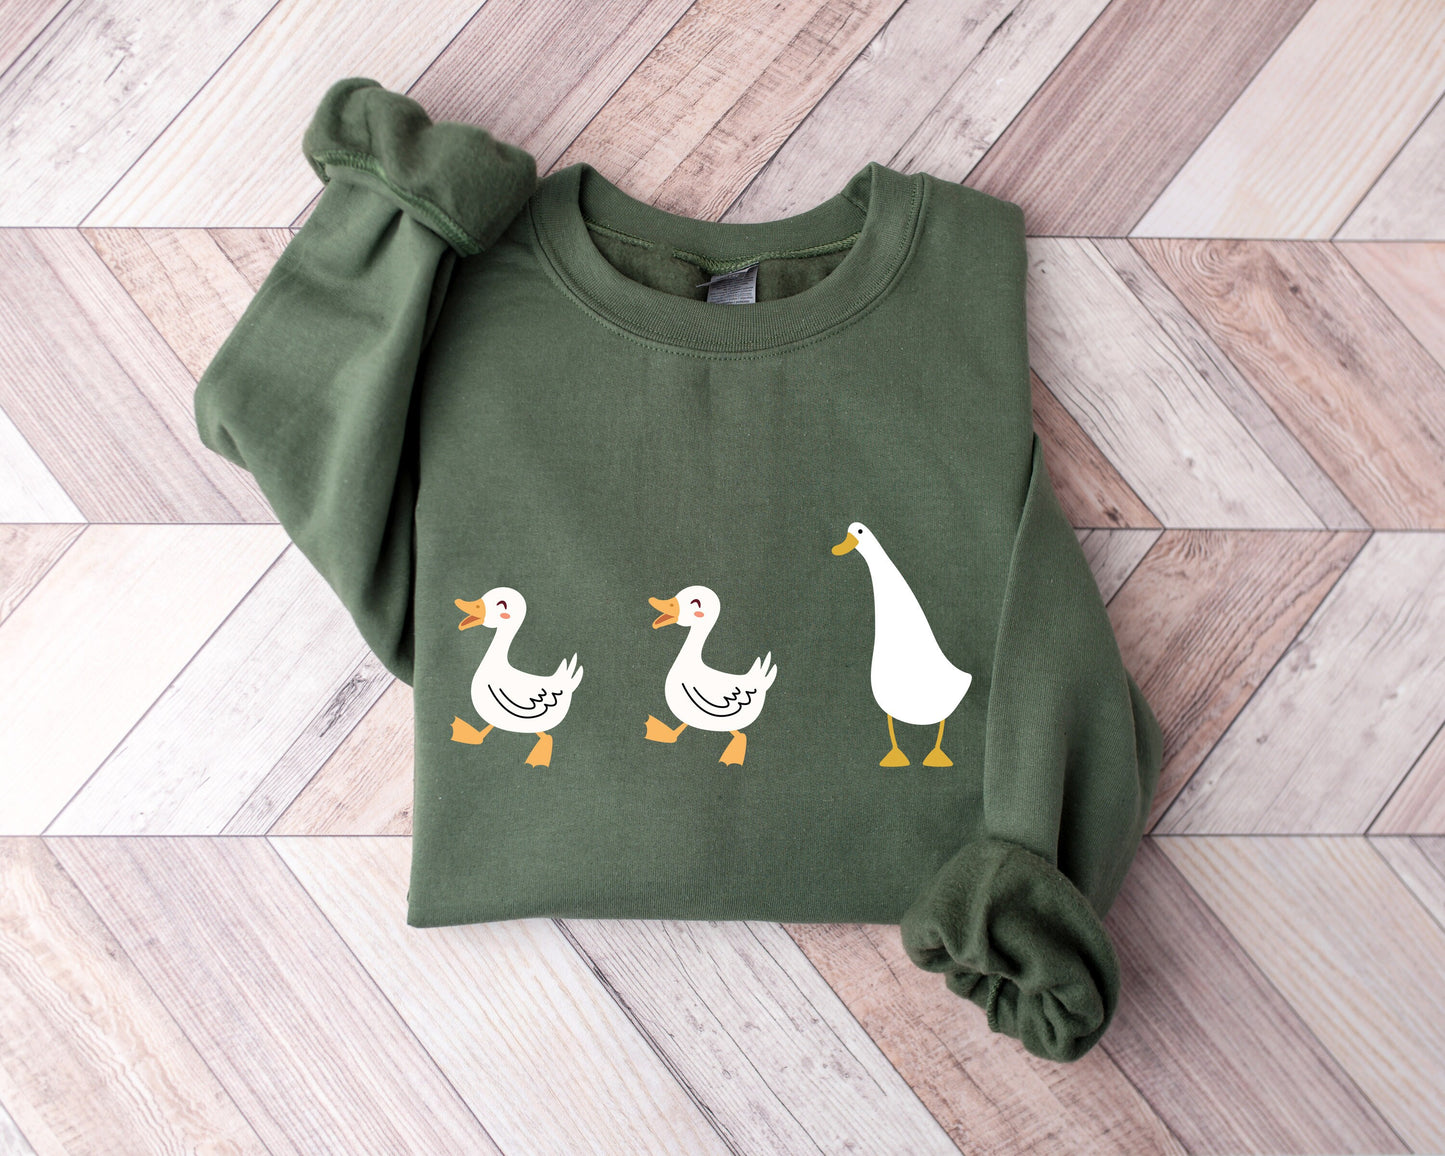 Duck Duck Goose Ultra Cozy Retro Drop Shoulder Graphic Sweatshirt Unisex Soft Tee T-shirt for Women or Men